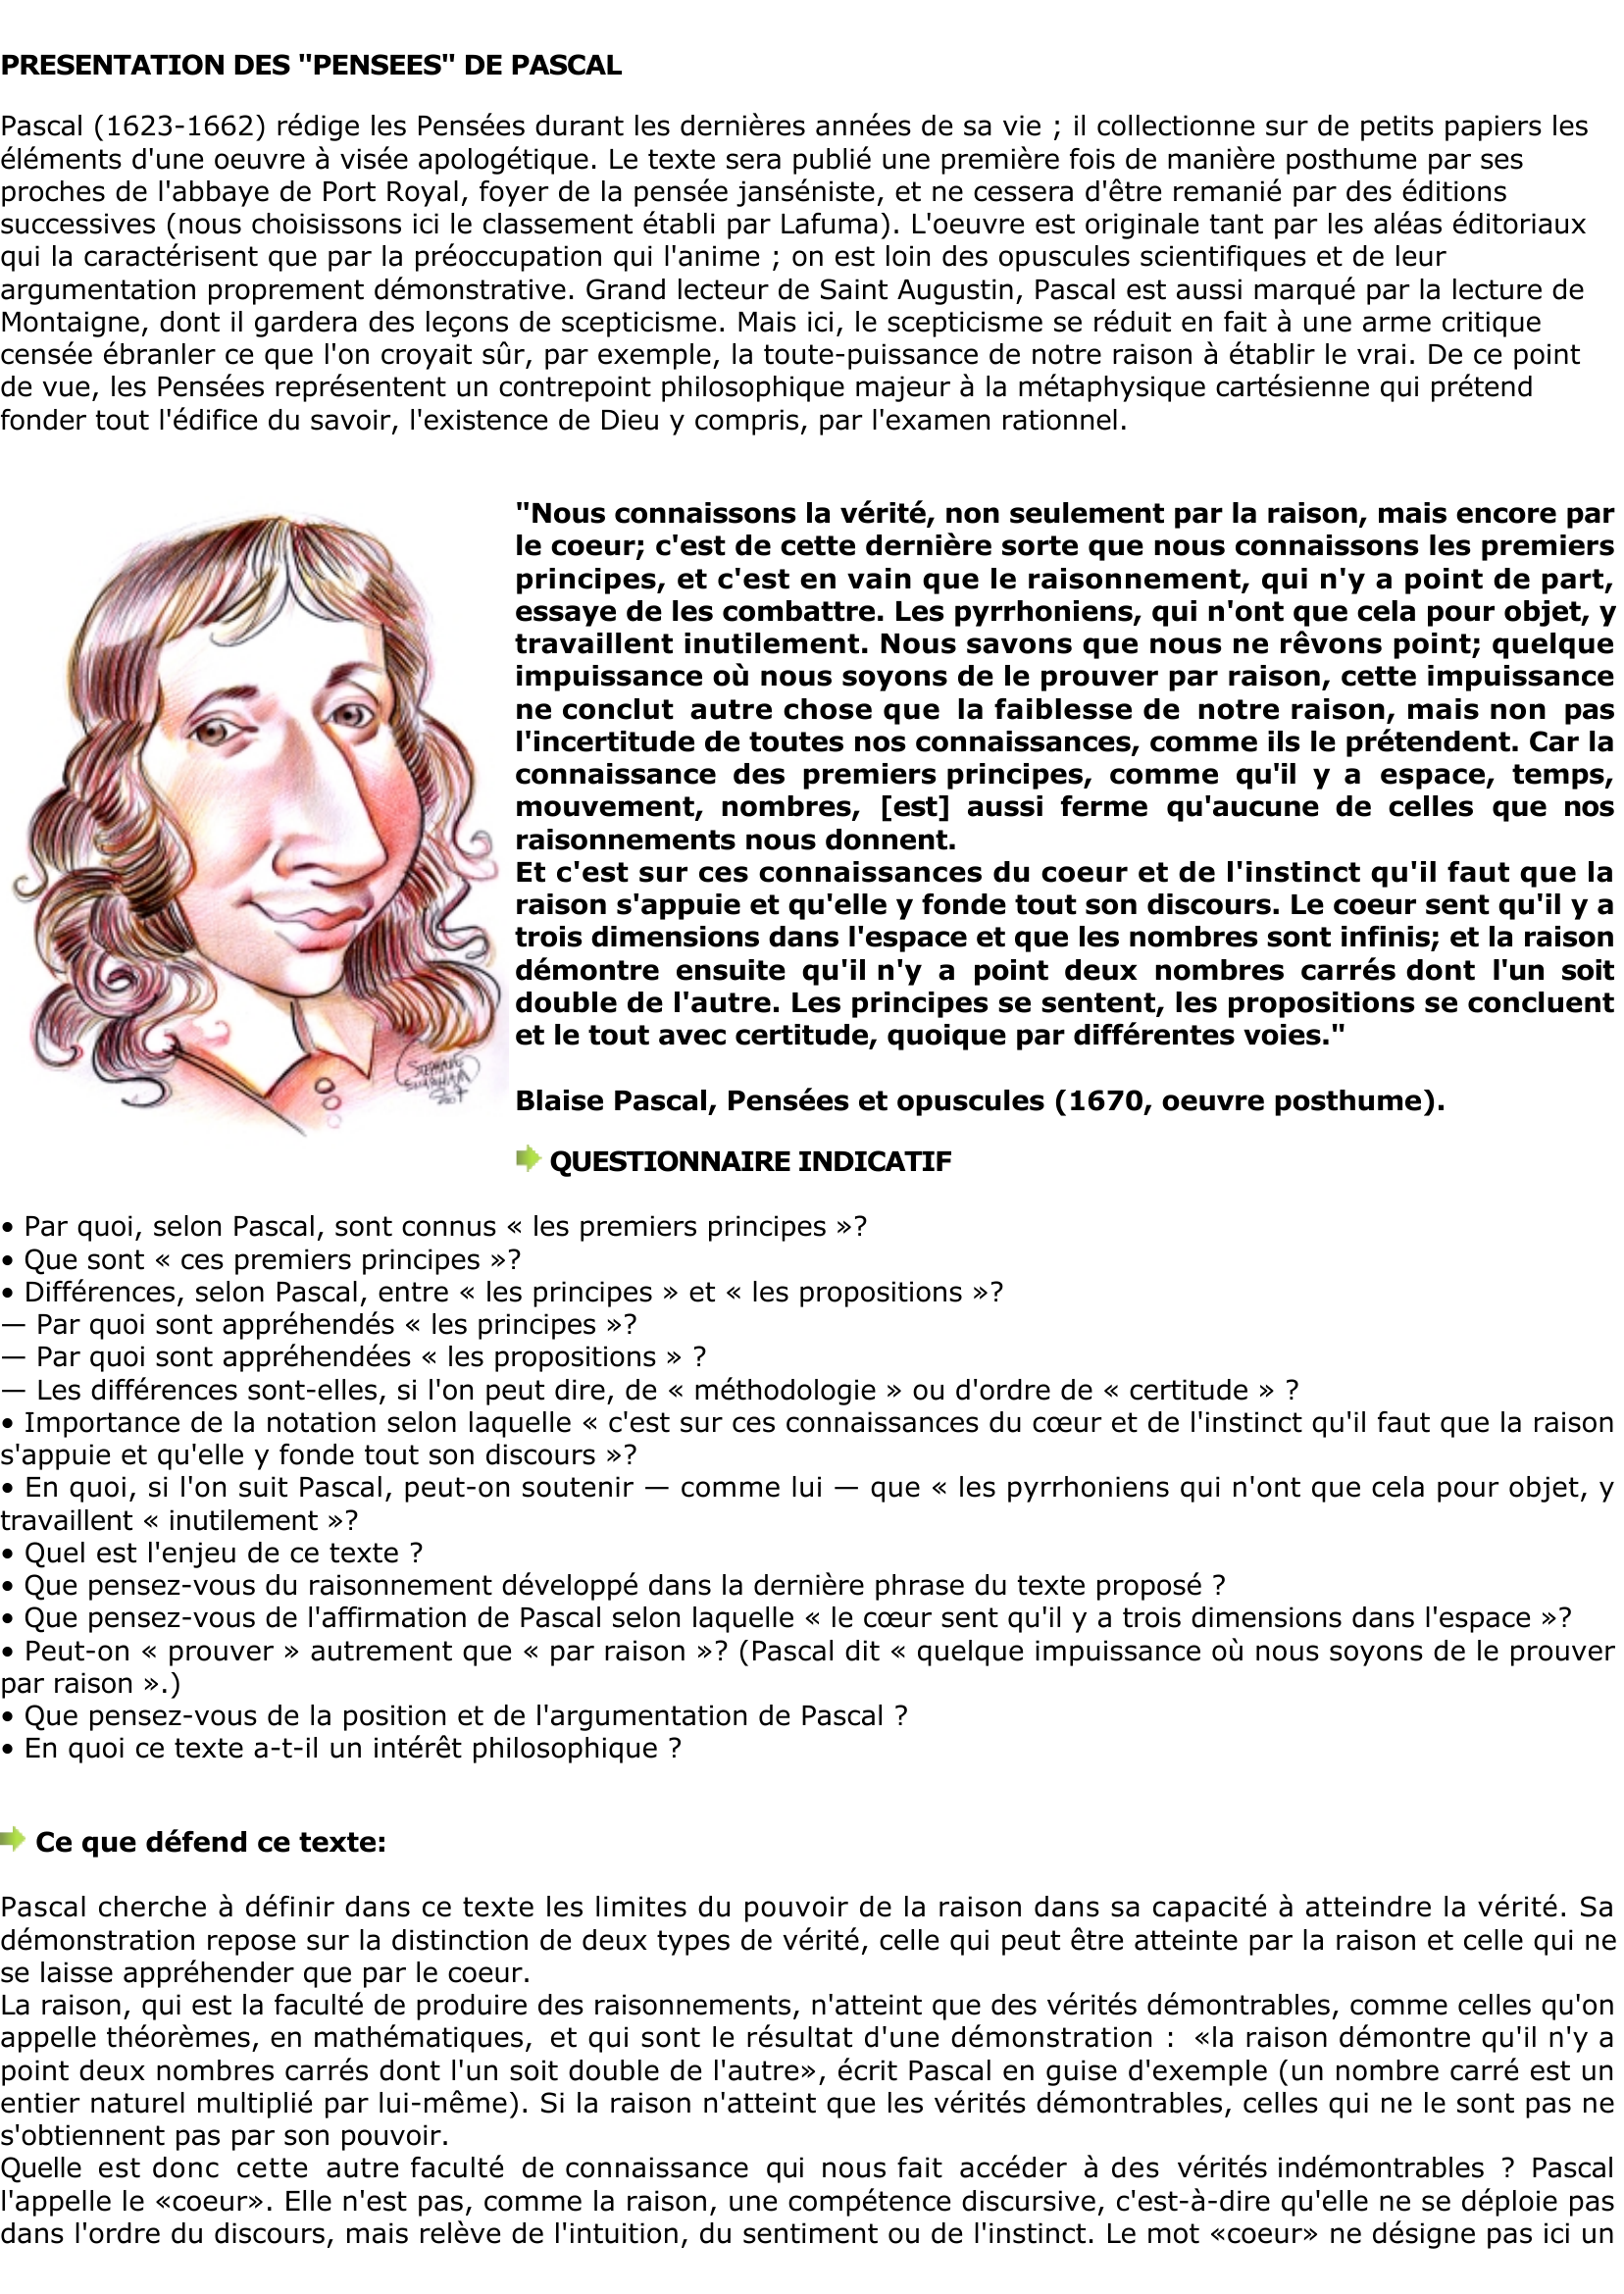 Prévisualisation du document Blaise Pascal: La raison peut-elle 

juger de tout ?